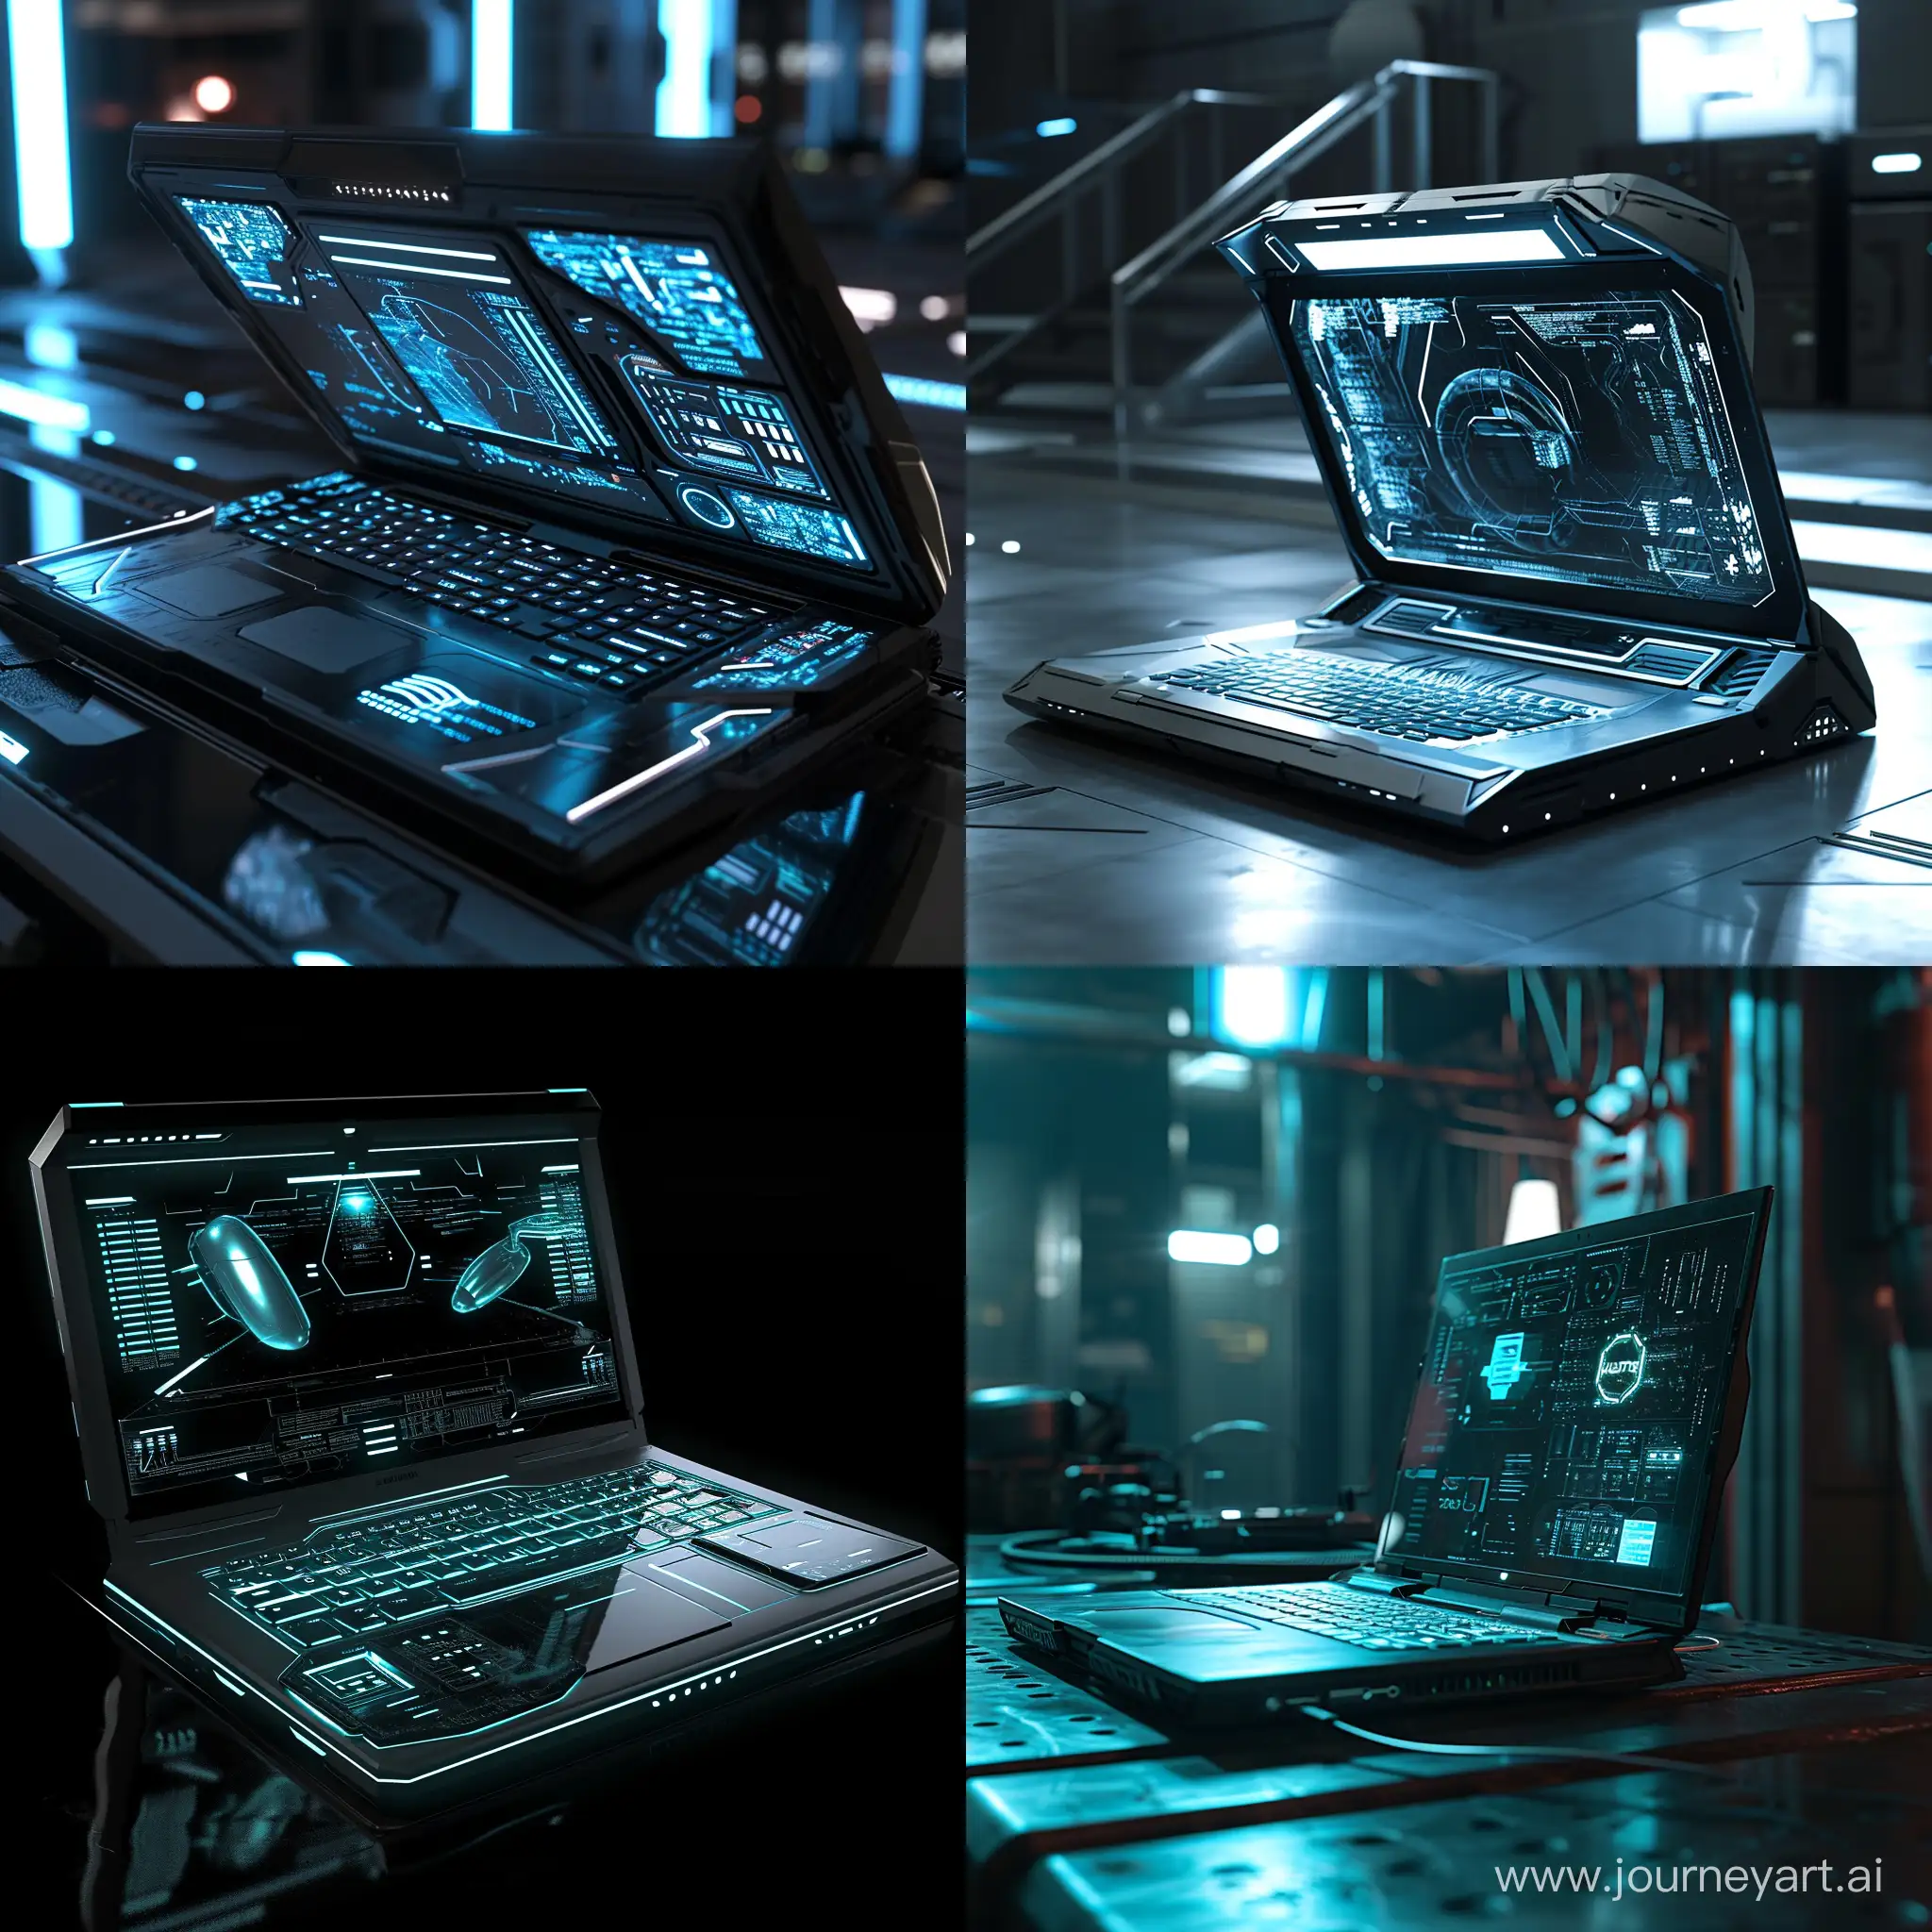 Futuristic-SciFi-Laptop-Technology